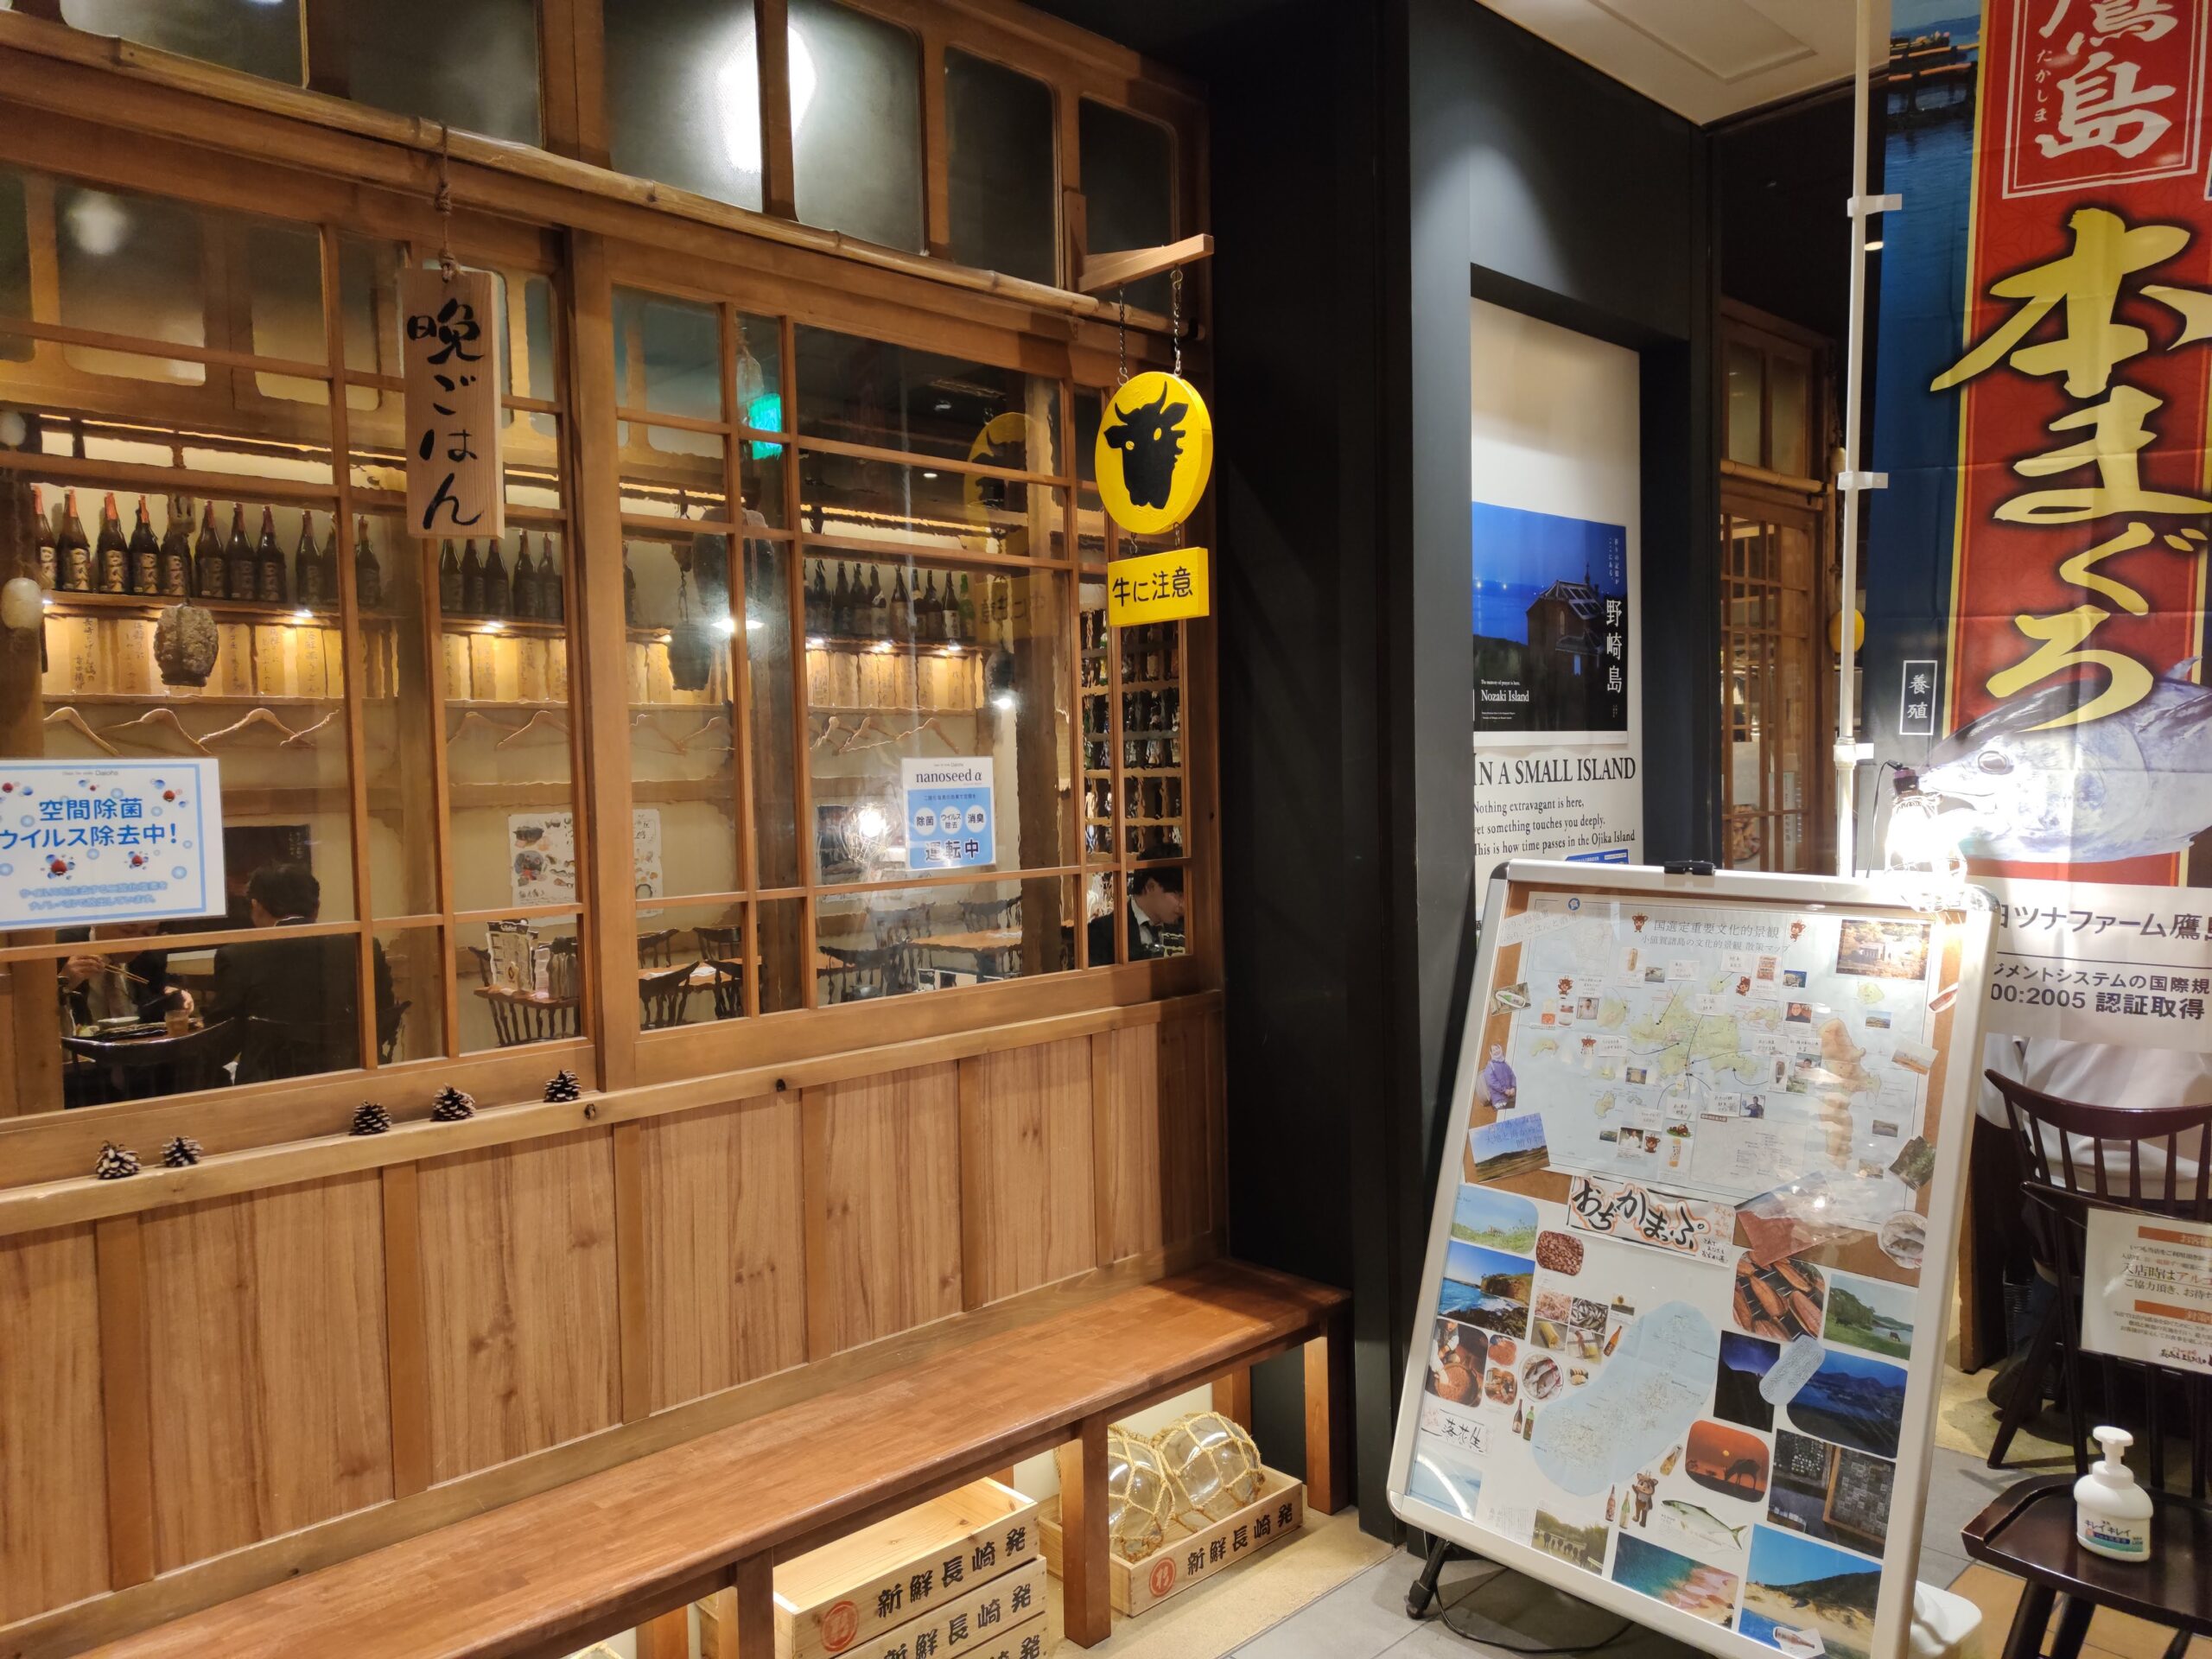 日本橋 ランチ ご当地酒場 長崎県五島列島 小値賀町 のランチセットはコスパ最高